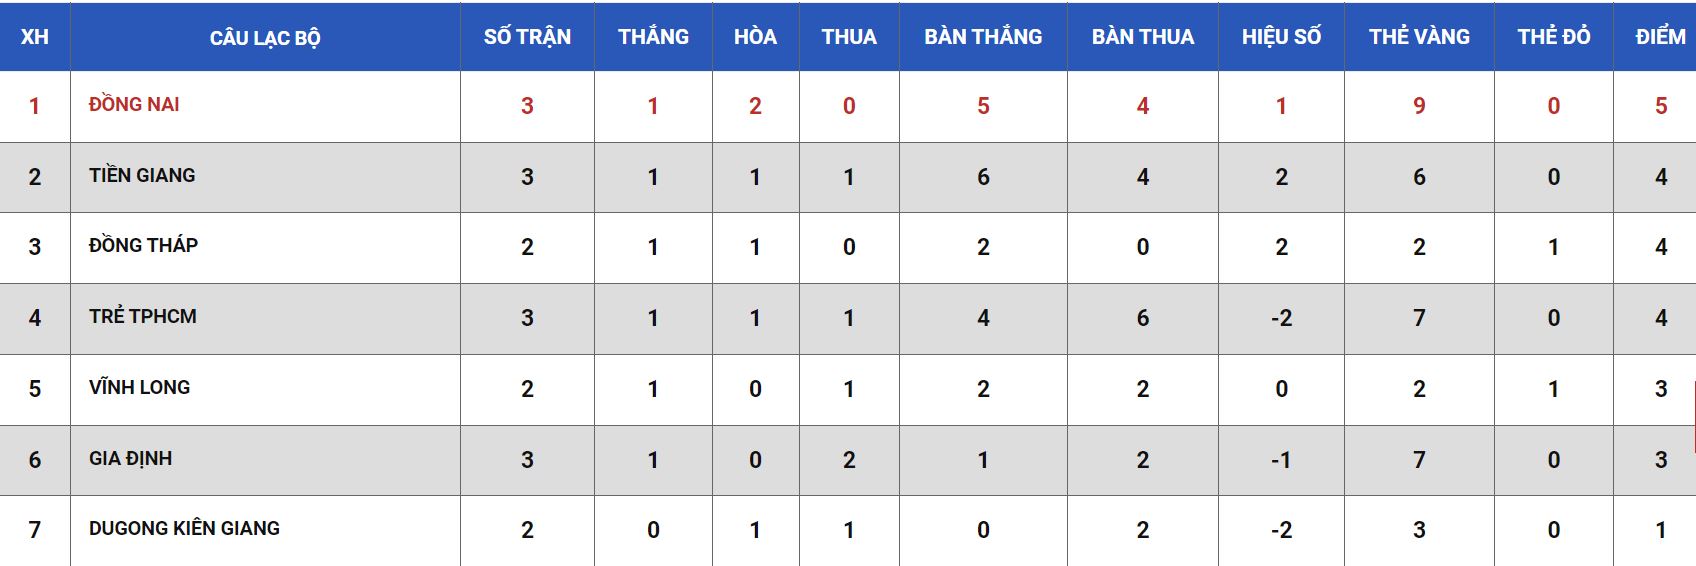 Soi kèo bóng đá Hạng nhì Việt Nam hôm nay 9/6: Vĩnh Long vs Đồng Nai - Ảnh 1